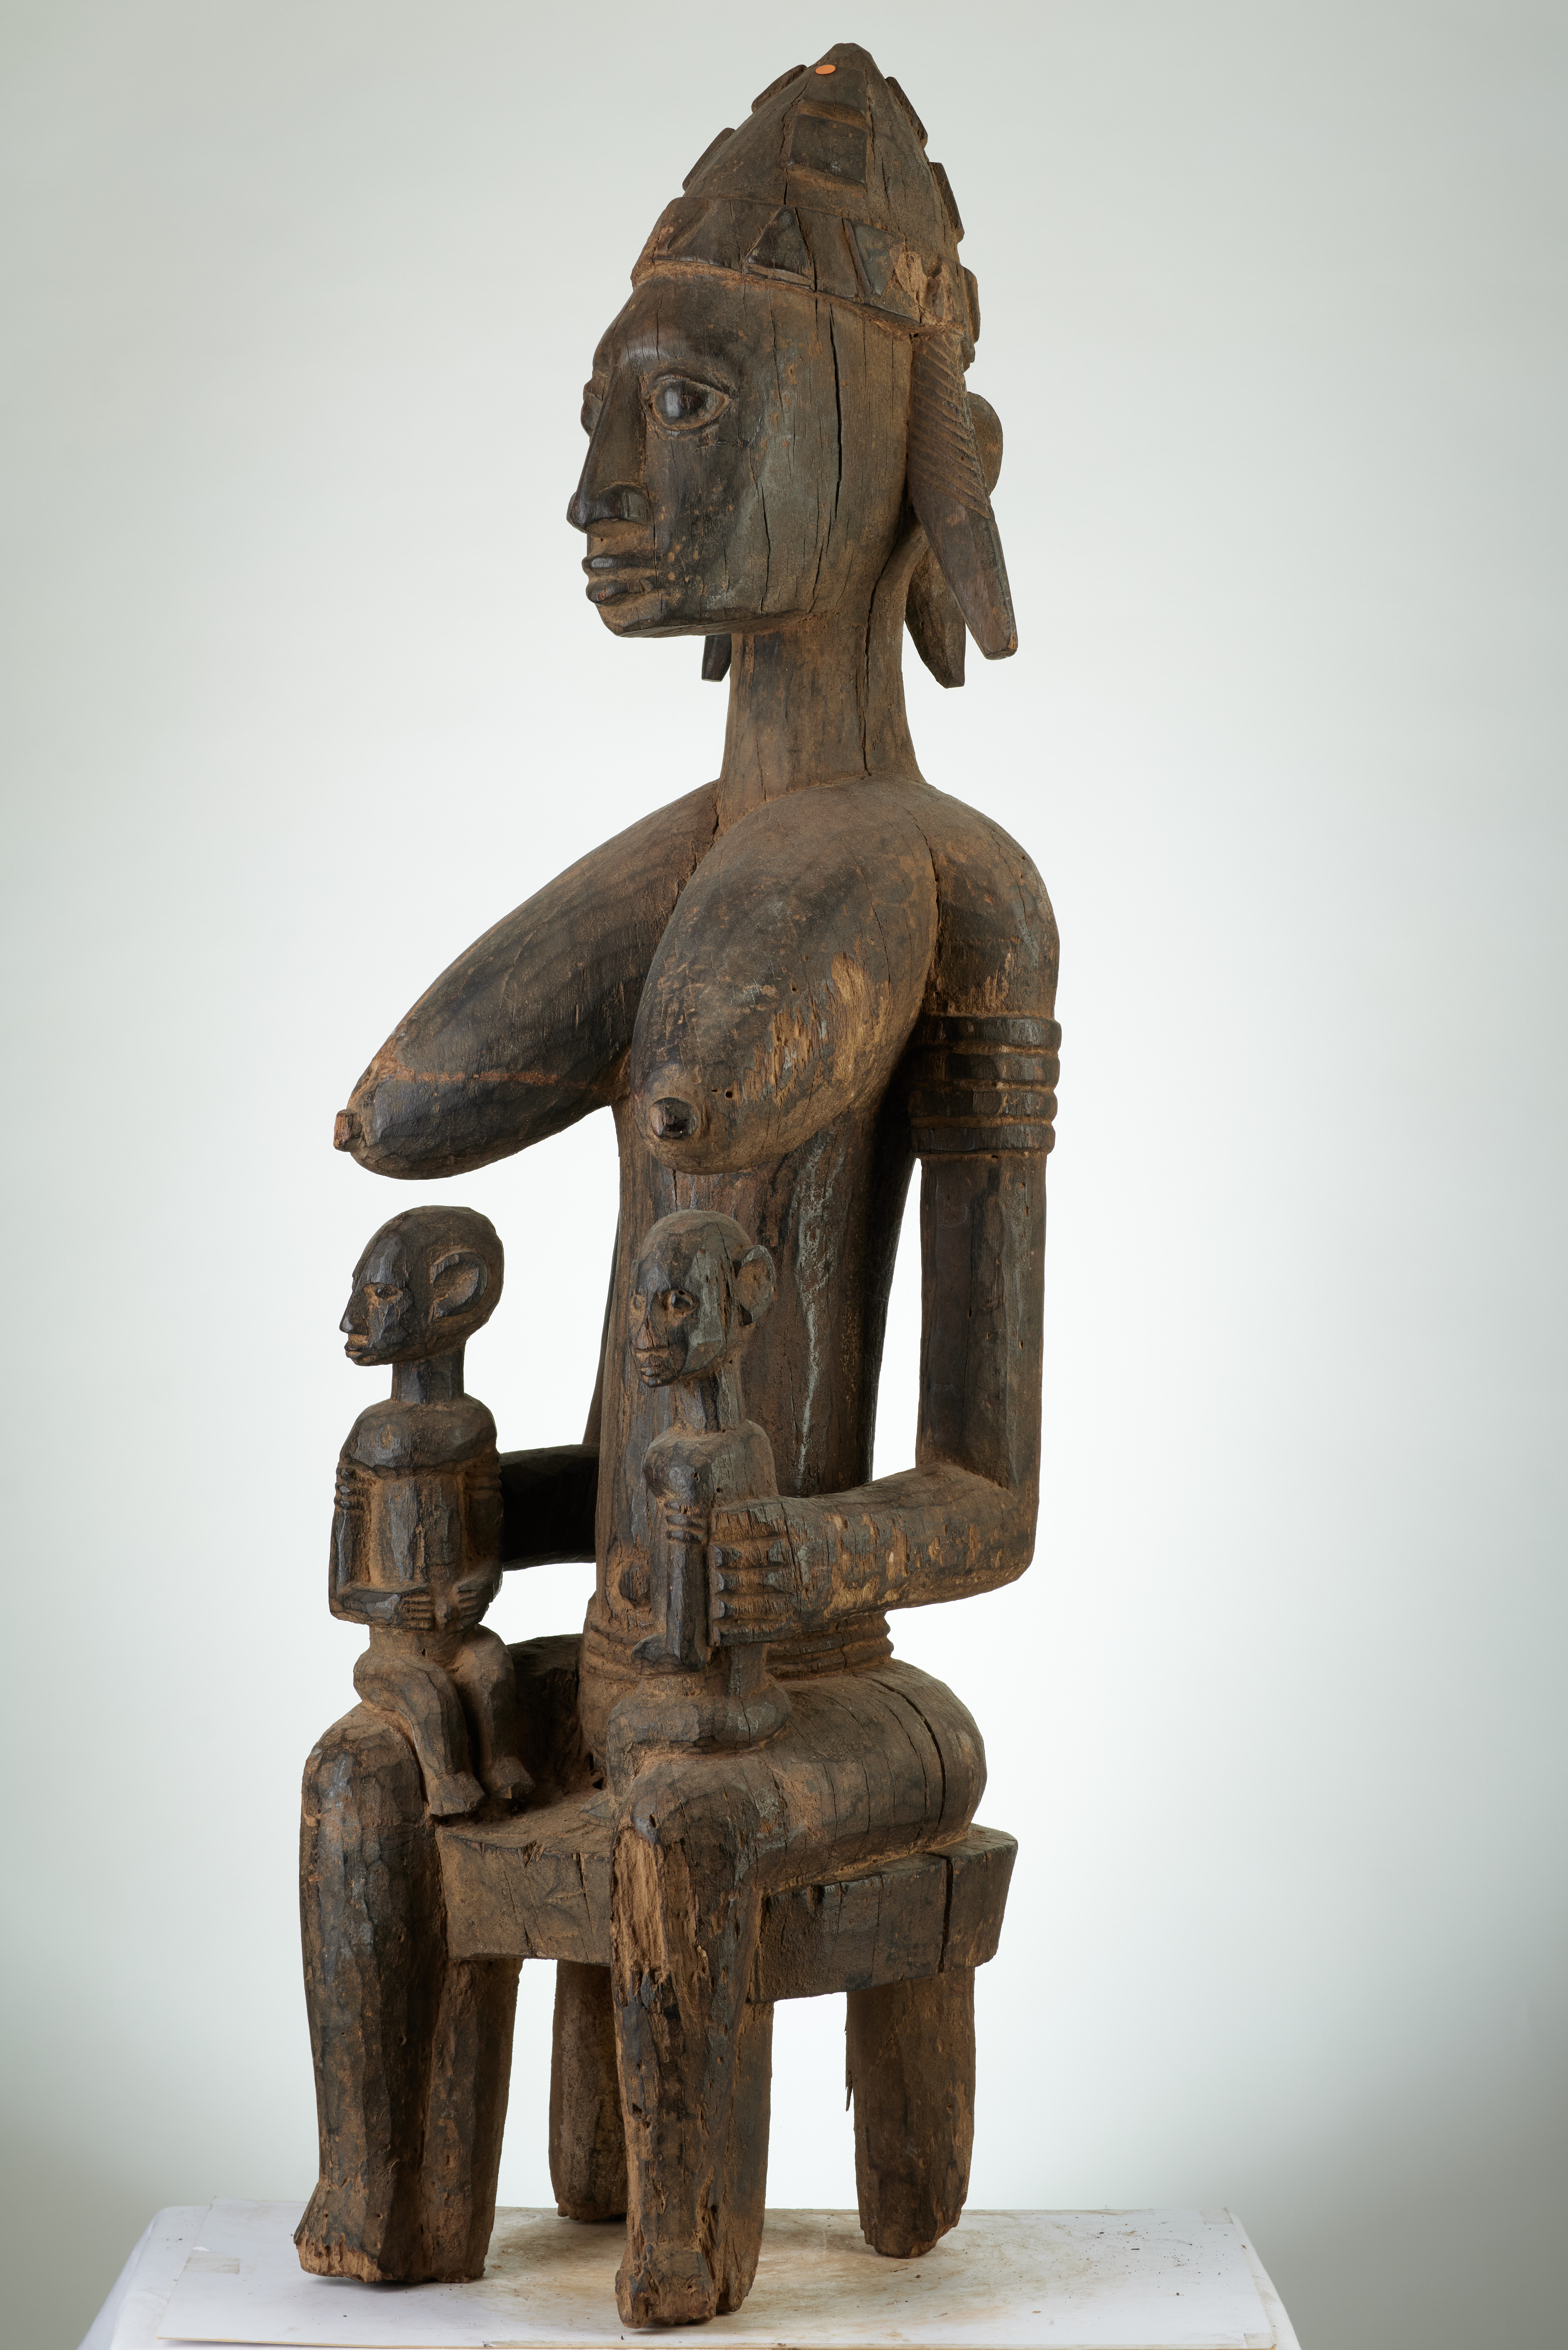 bambara (maternité assise ), d`afrique : MALI, statuette bambara (maternité assise ), masque ancien africain bambara (maternité assise ), art du MALI - Art Africain, collection privées Belgique. Statue africaine de la tribu des bambara (maternité assise ), provenant du MALI, 1877:Très belle et ancienne maternité Bambara. GUANDOUDOU reine des Bambara.Une ancêtre assise avec deux enfants sur les genoux.Elle arbore une coiffure enforme decrête et a des grands seins. La statue :Utilisée pour les fêtes de la societé GUAN.Des sacrifices leur étaient offerts.Statue érodée datant du 18eme sc.(Simon du chastel de la Howarderie)

Heel oud en mooi Bambara moederschap.GUANDOUDOU koningin van de bambaras.Een neerzittende voorouder
met twee kinderen op haar knieën.Haartooi in vorm van een kam en grote borsten.Het beeld werd gebruikt tijdens de GUAN cérémonies.Ze kreeg offers.Het beeld is geerodeerd en dateert uit de 18de eeuw.. art,culture,masque,statue,statuette,pot,ivoire,exposition,expo,masque original,masques,statues,statuettes,pots,expositions,expo,masques originaux,collectionneur d`art,art africain,culture africaine,masque africain,statue africaine,statuette africaine,pot africain,ivoire africain,exposition africain,expo africain,masque origina africainl,masques africains,statues africaines,statuettes africaines,pots africains,expositions africaines,expo africaines,masques originaux  africains,collectionneur d`art africain